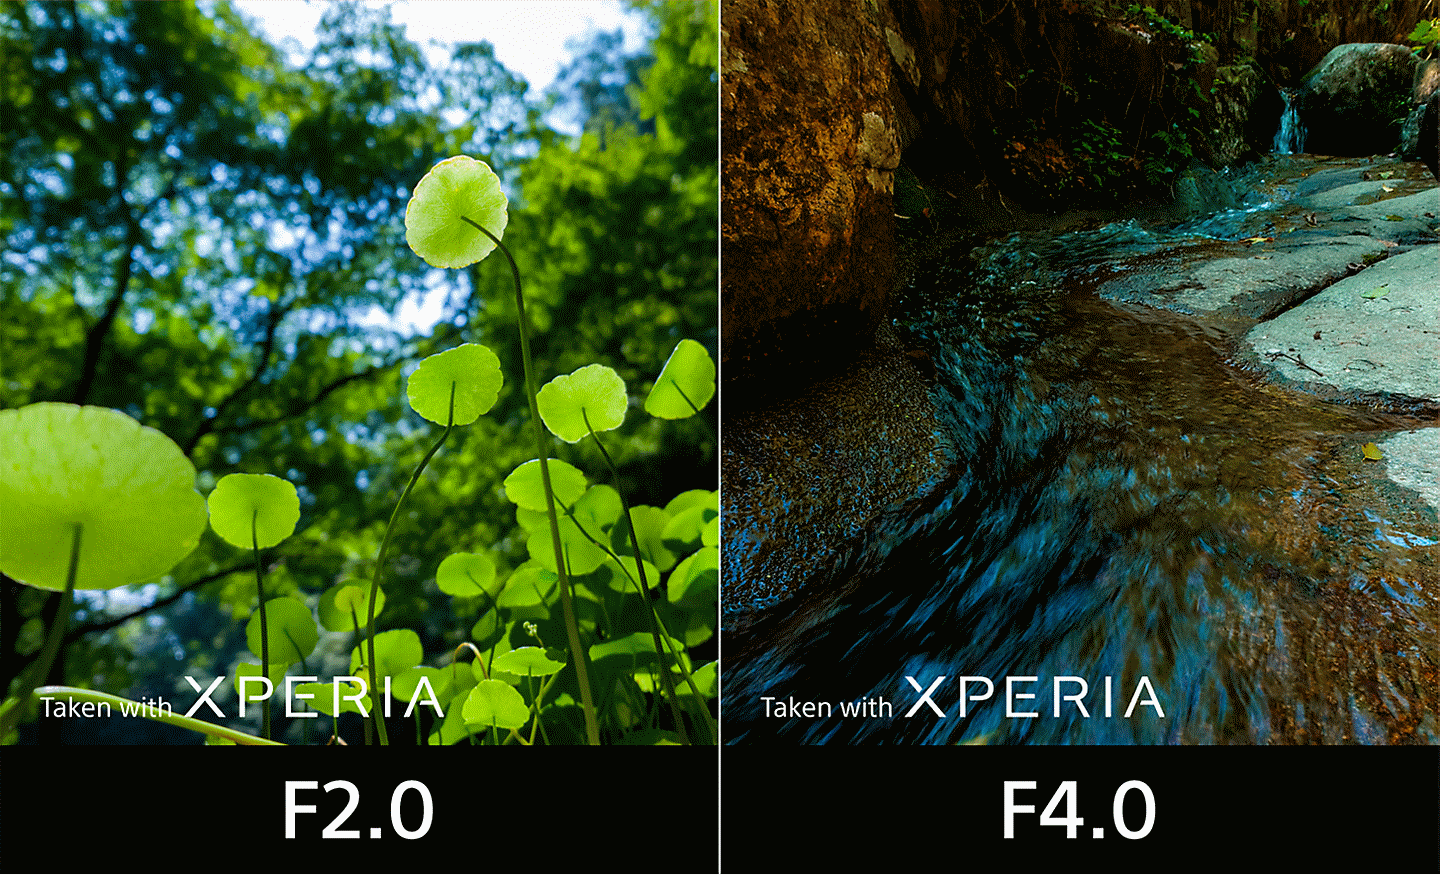 Màn hình chia đôi so sánh bức ảnh chụp tán lá ở khẩu độ F2.0 và bức ảnh chụp dòng suối ở khẩu độ F4.0. Trên ảnh có dòng chữ "Taken with XPERIA" (Chụp bằng XPERIA).